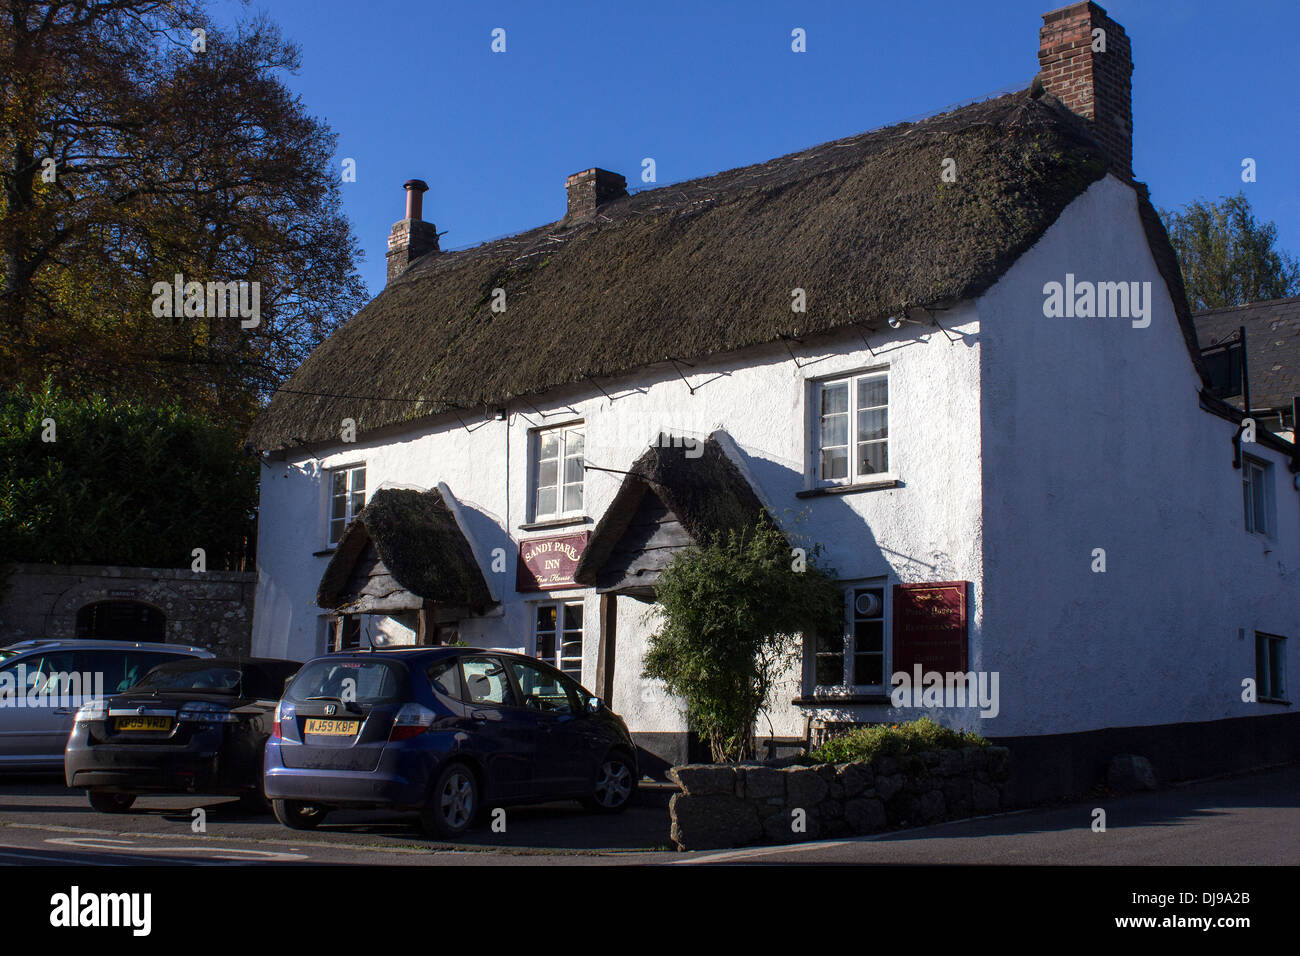 Sandy park inn,Chagford Devon,,s/n et de chaume,,vernaculaire Dartmoor National Park,auberge rurale,pub,16e siècle Banque D'Images